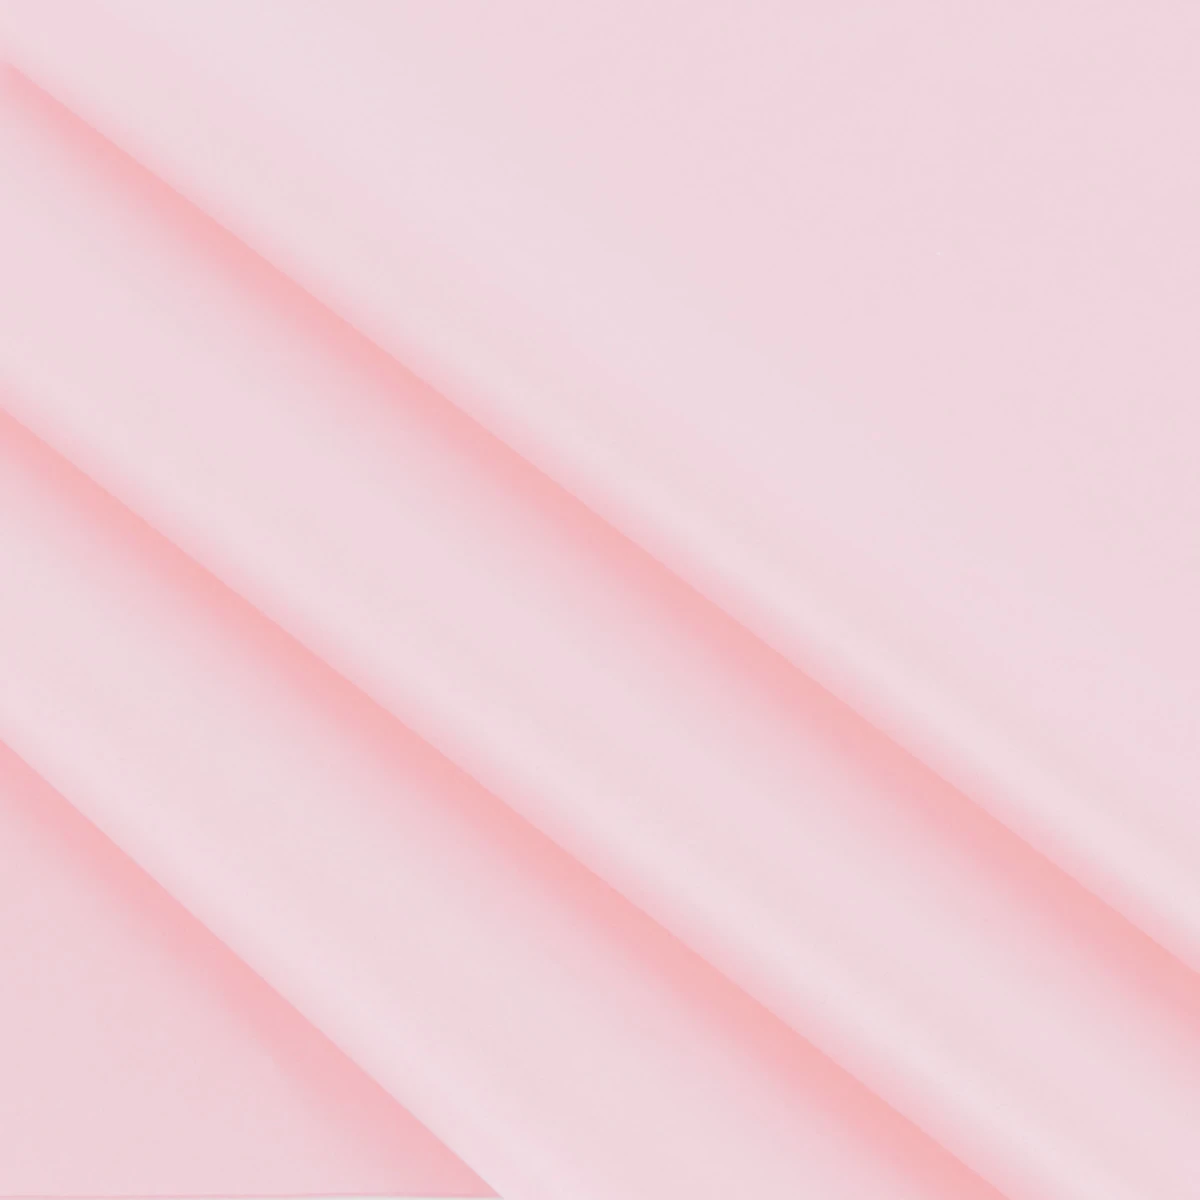 Vloeipapier roze 35 x 50 cm (480 vellen)